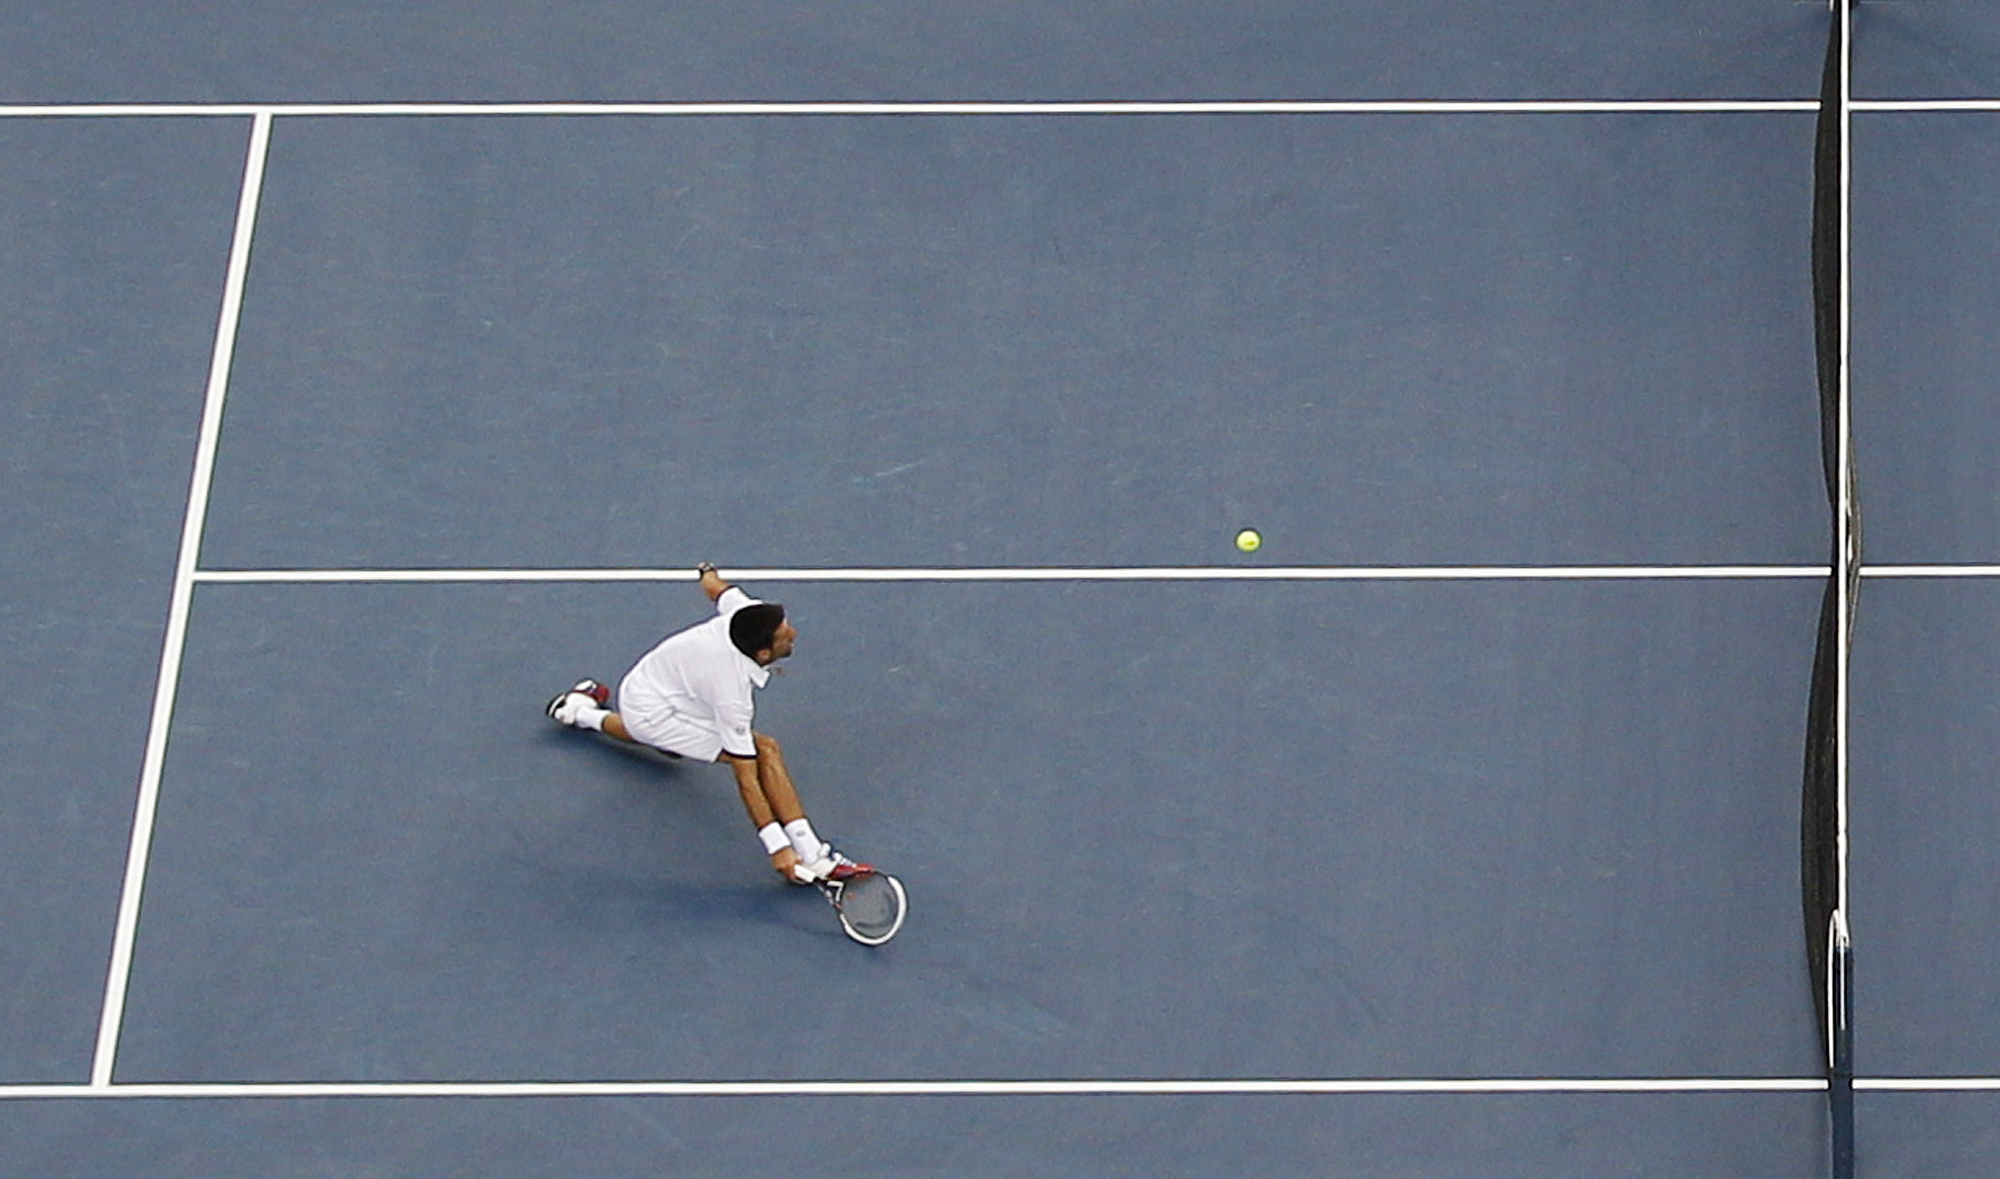 Tennis, Rafael Nadal, Novak Djokovic, Roger Federer, US Open